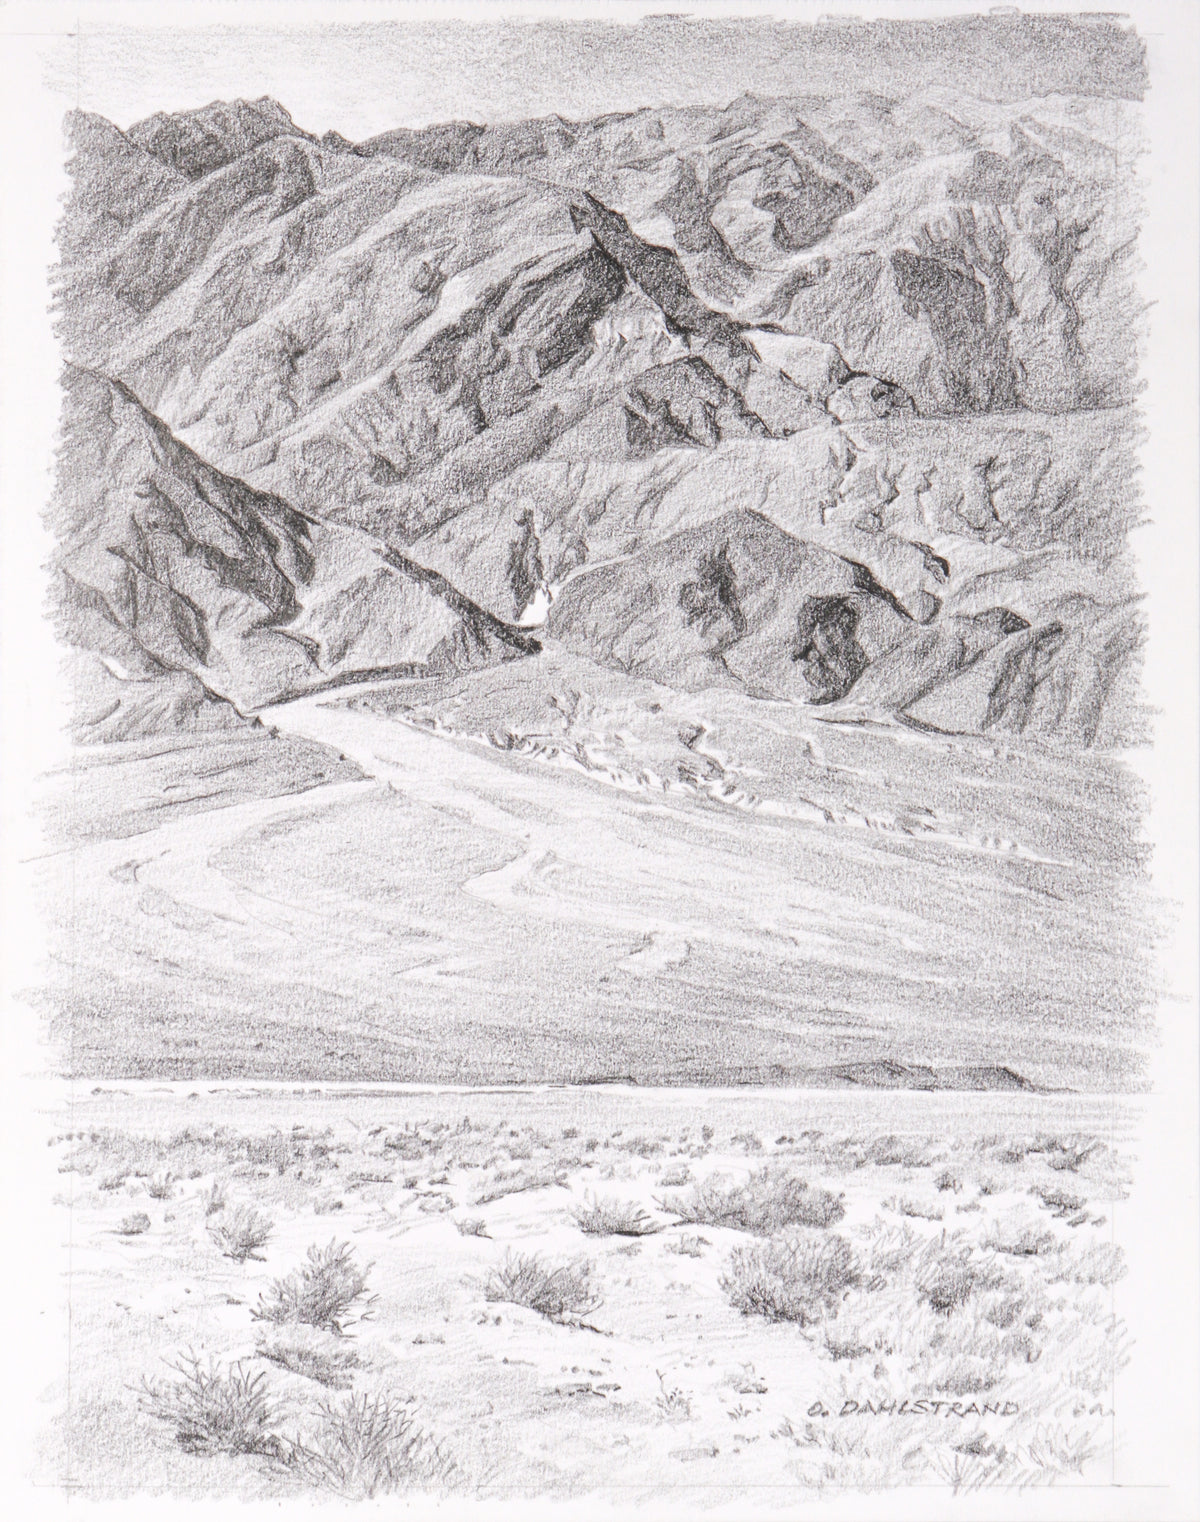 &lt;I&gt;Tucki Mountain, Death Valley&lt;/I&gt; &lt;br&gt;20th Century Graphite&lt;br&gt;&lt;br&gt;#C2768